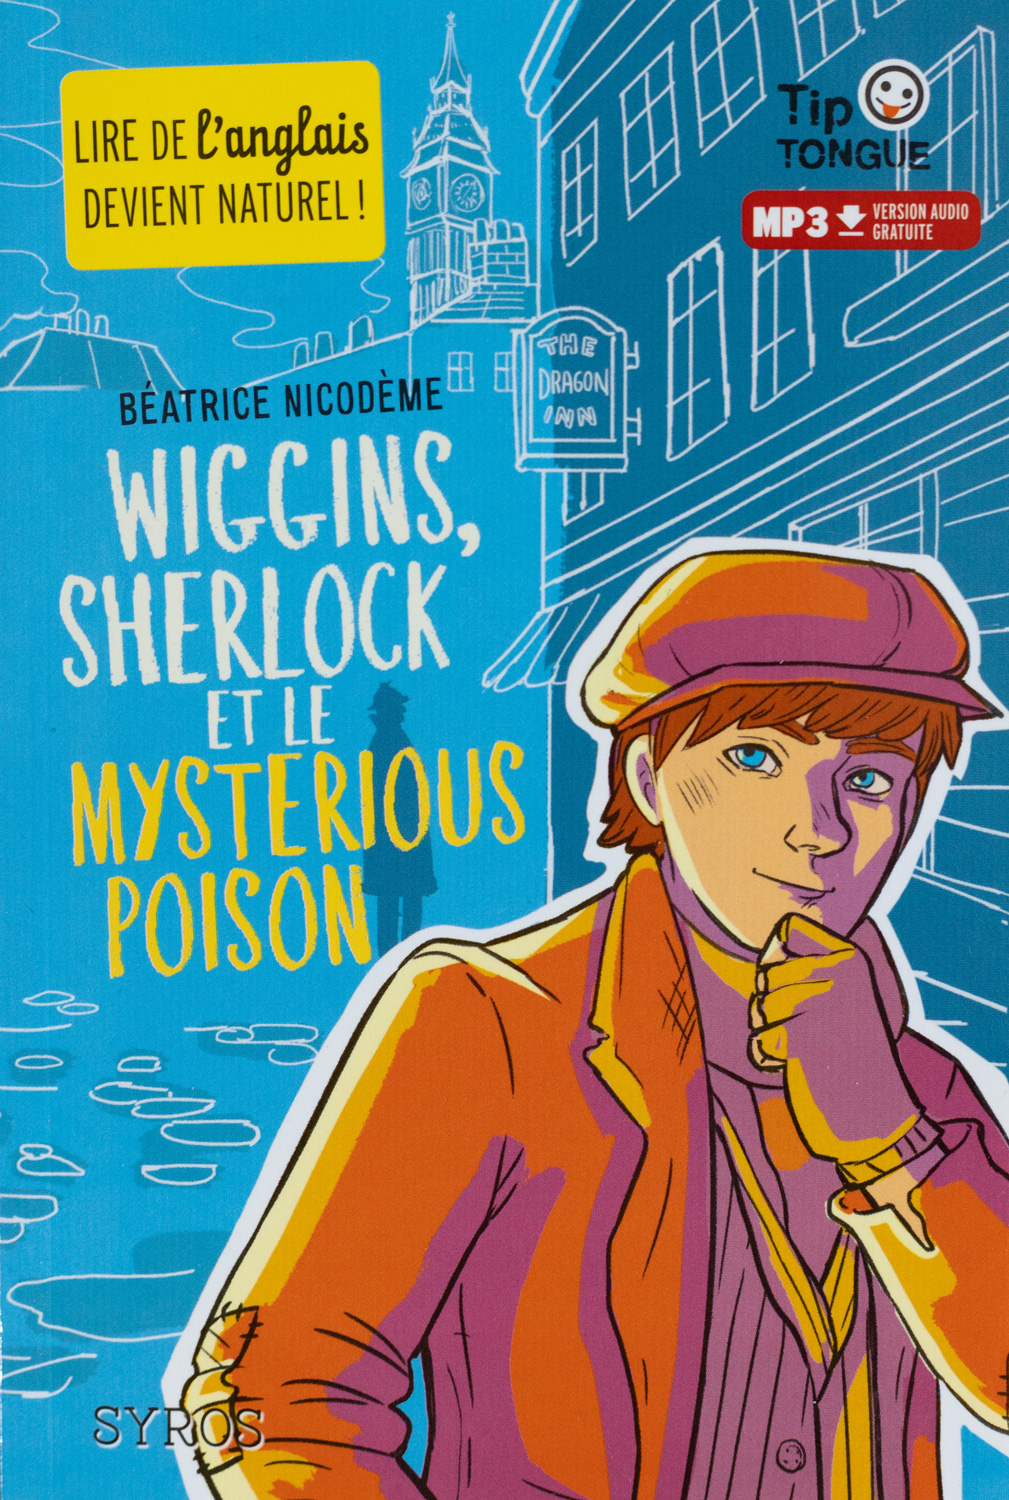 Beatrice Nicodeme autrice couverture du roman Wiggins, Sherlock et le mysterious poison